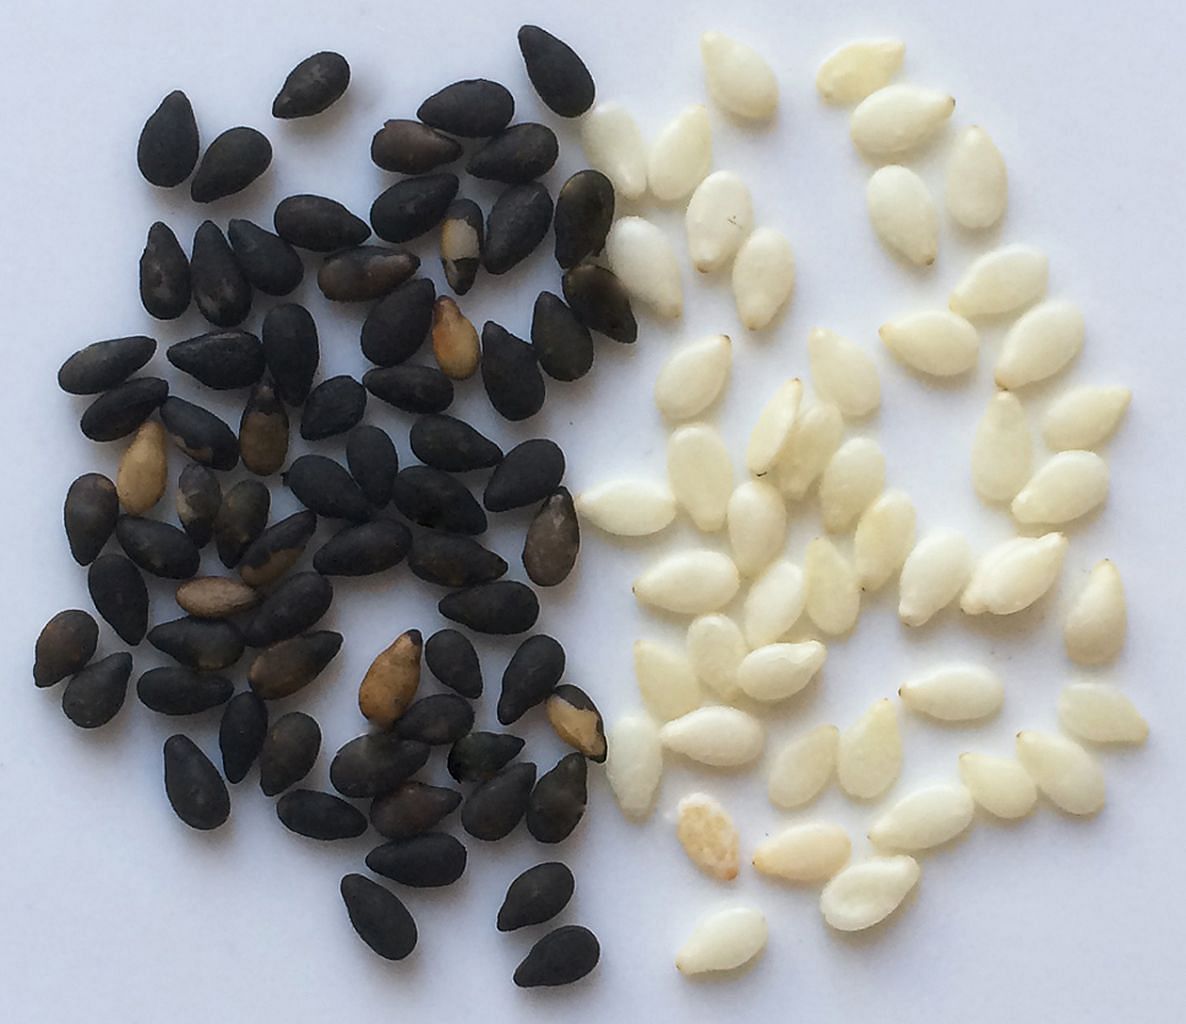 Черные семена похожие. Яйца глистов похожие на кунжут. Личинки глистов похожие на кунжут. Яйцеглист похожи на семена кунжута. Семена черные мелкие.